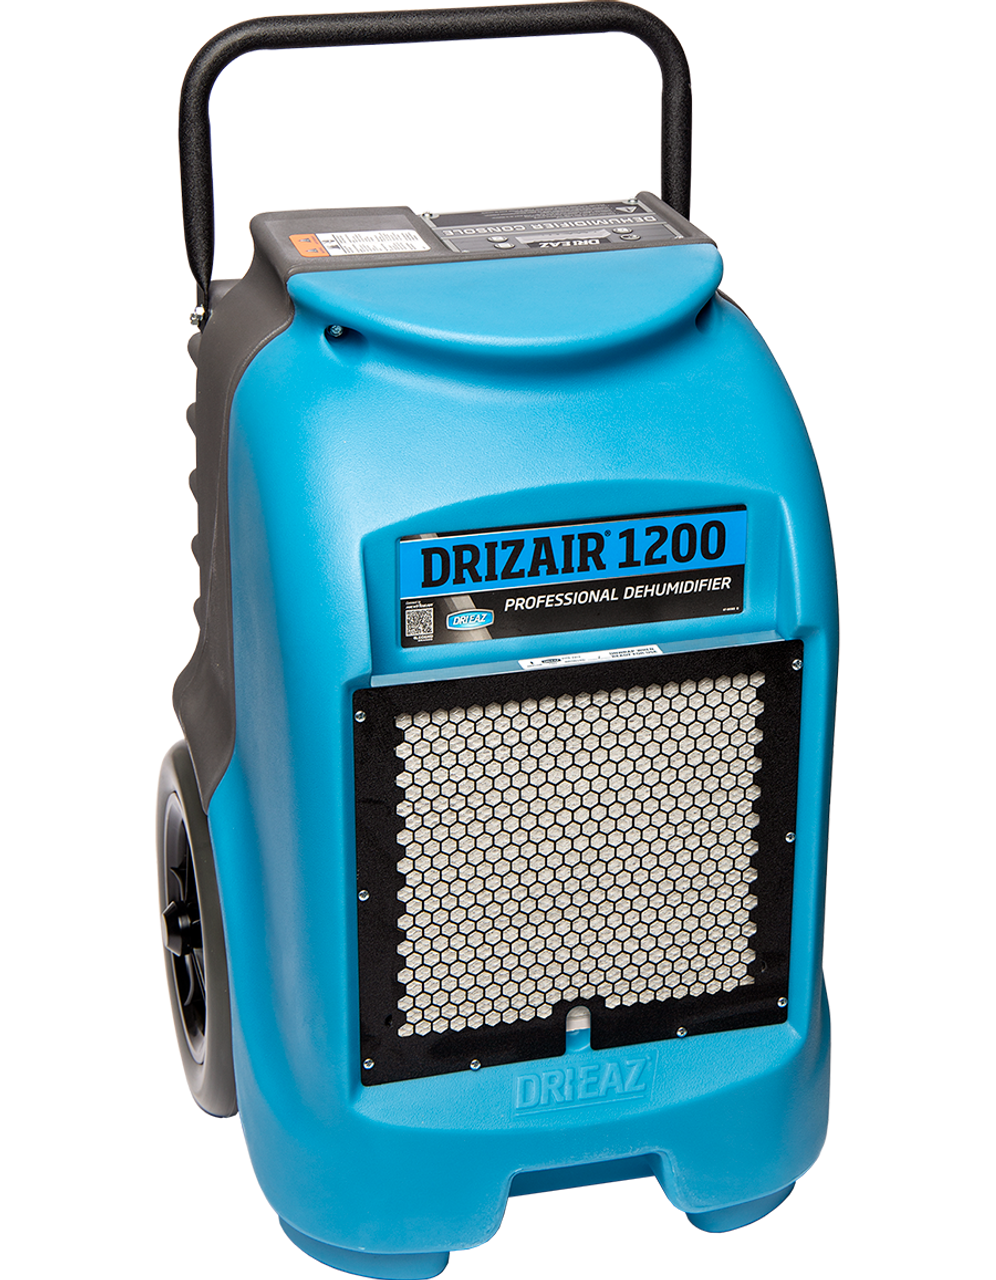 DriEaz DrizAir 1200 Dehumidifier - 104677